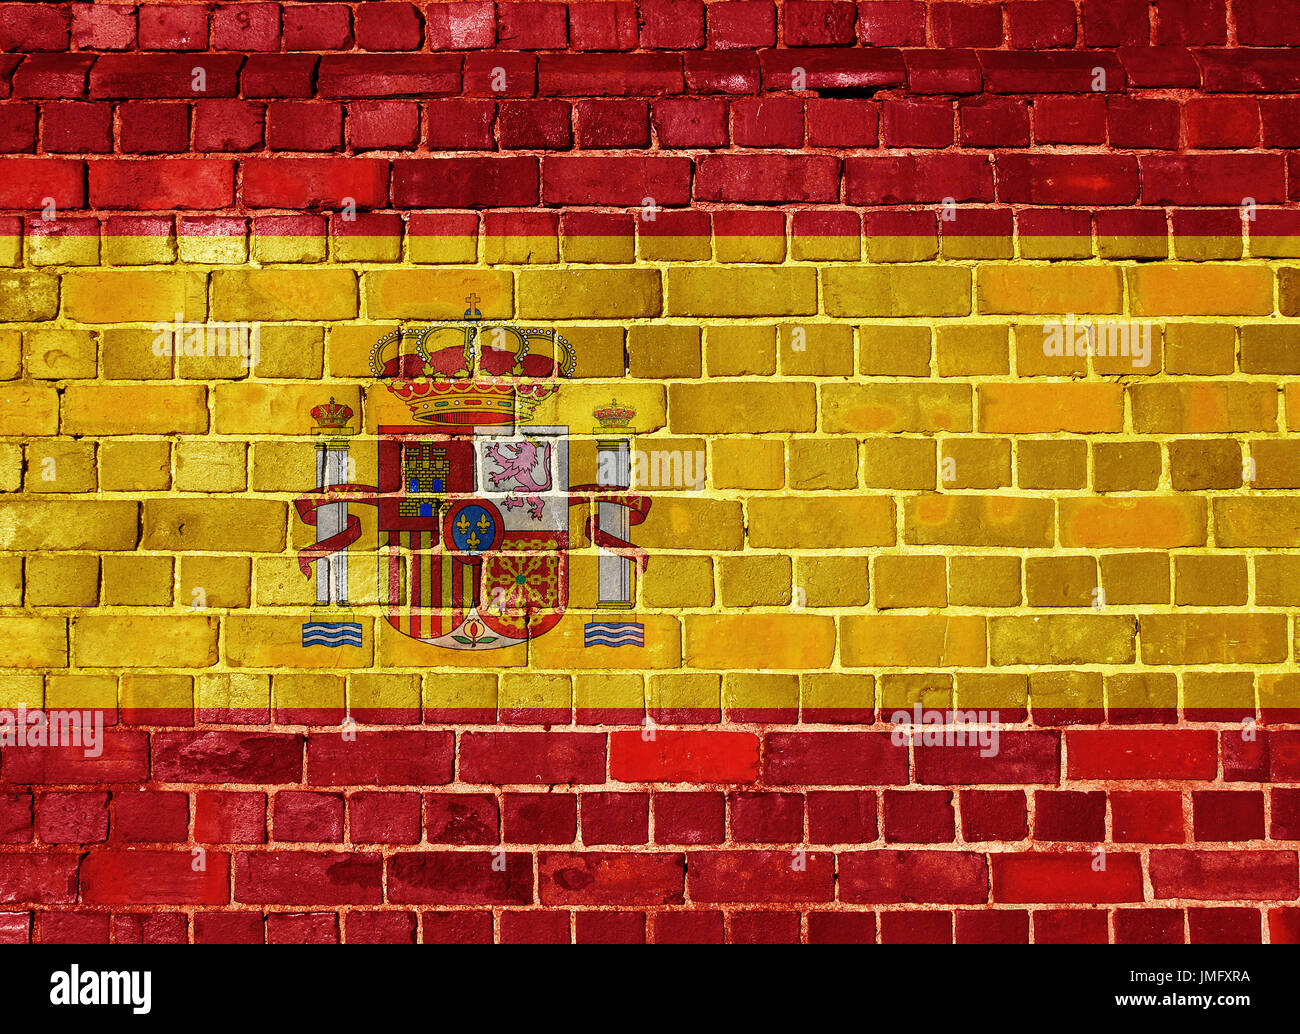 Khám phá cờ Tây Ban Nha trên nền tường gạch cổ trong stock photo. Bức ảnh này đem lại một cảm giác cổ điển và truyền thống của Tây Ban Nha, là điểm nhấn cho không gian sống của bạn. Bấm vào để tìm hiểu thêm những bức ảnh đẹp khác của Tây Ban Nha. 